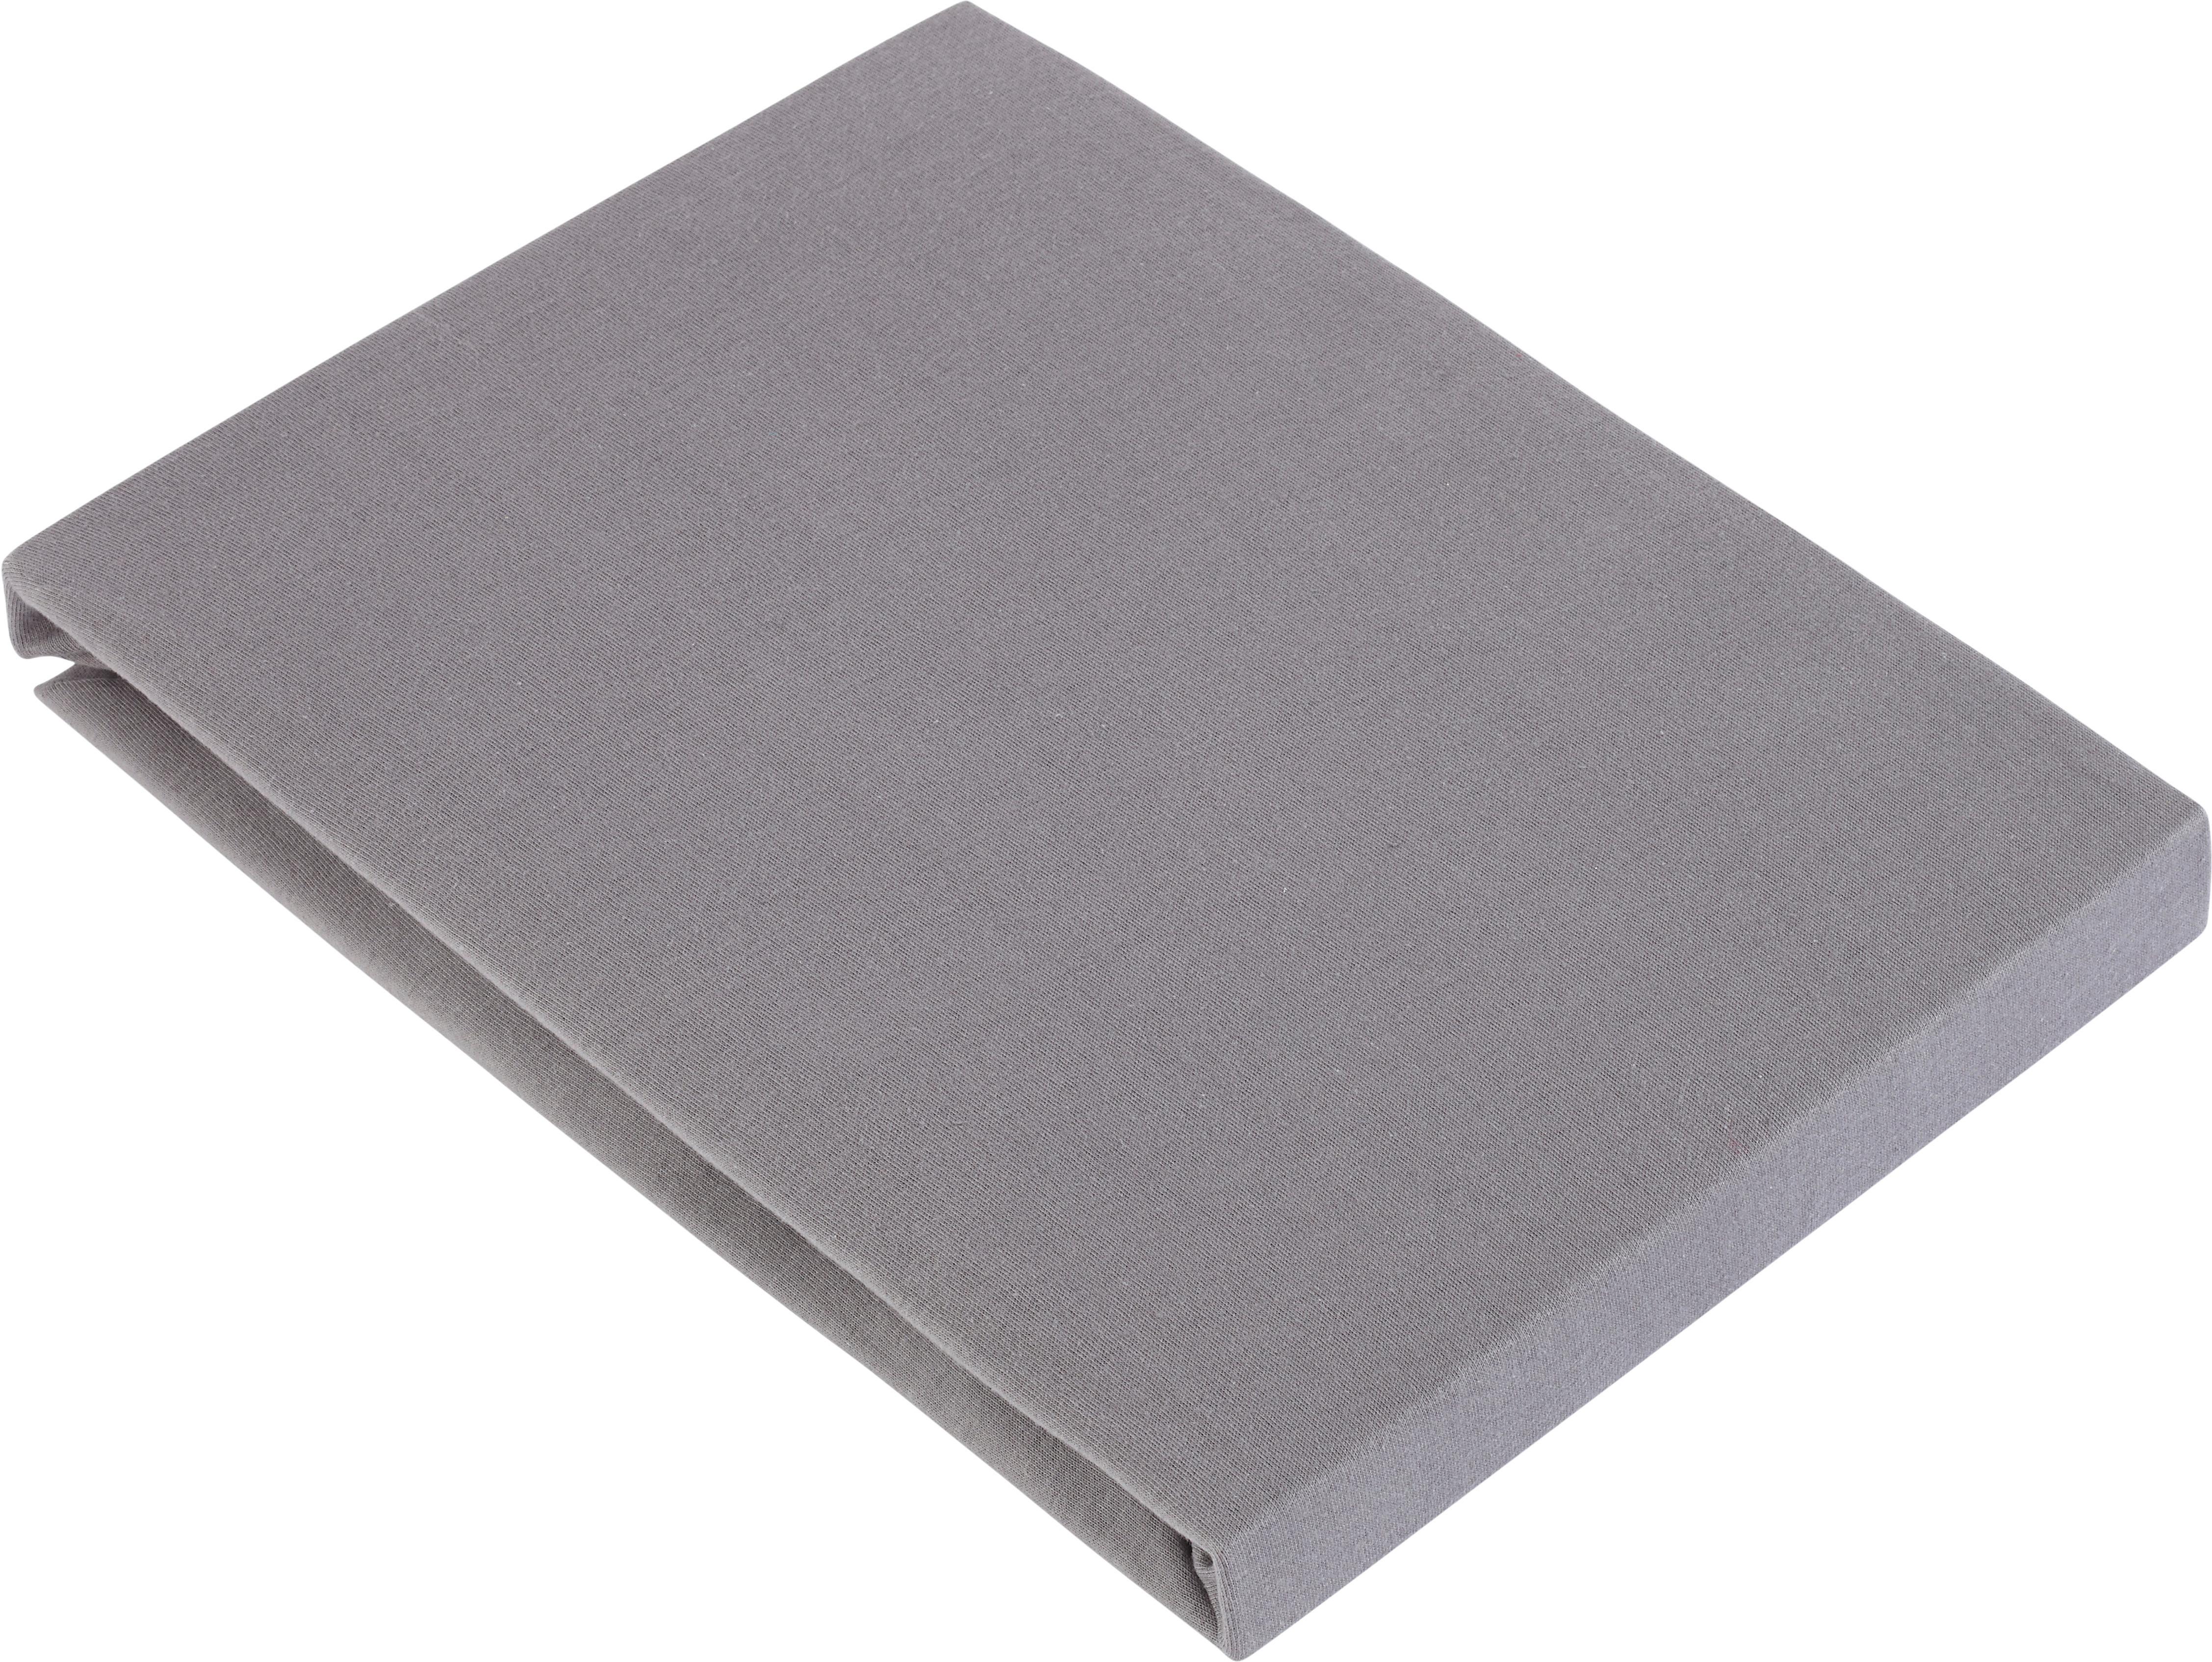 Spannbetttuch Basic in Grau ca. 100x200cm - Grau, Textil (100/200cm) - Modern Living